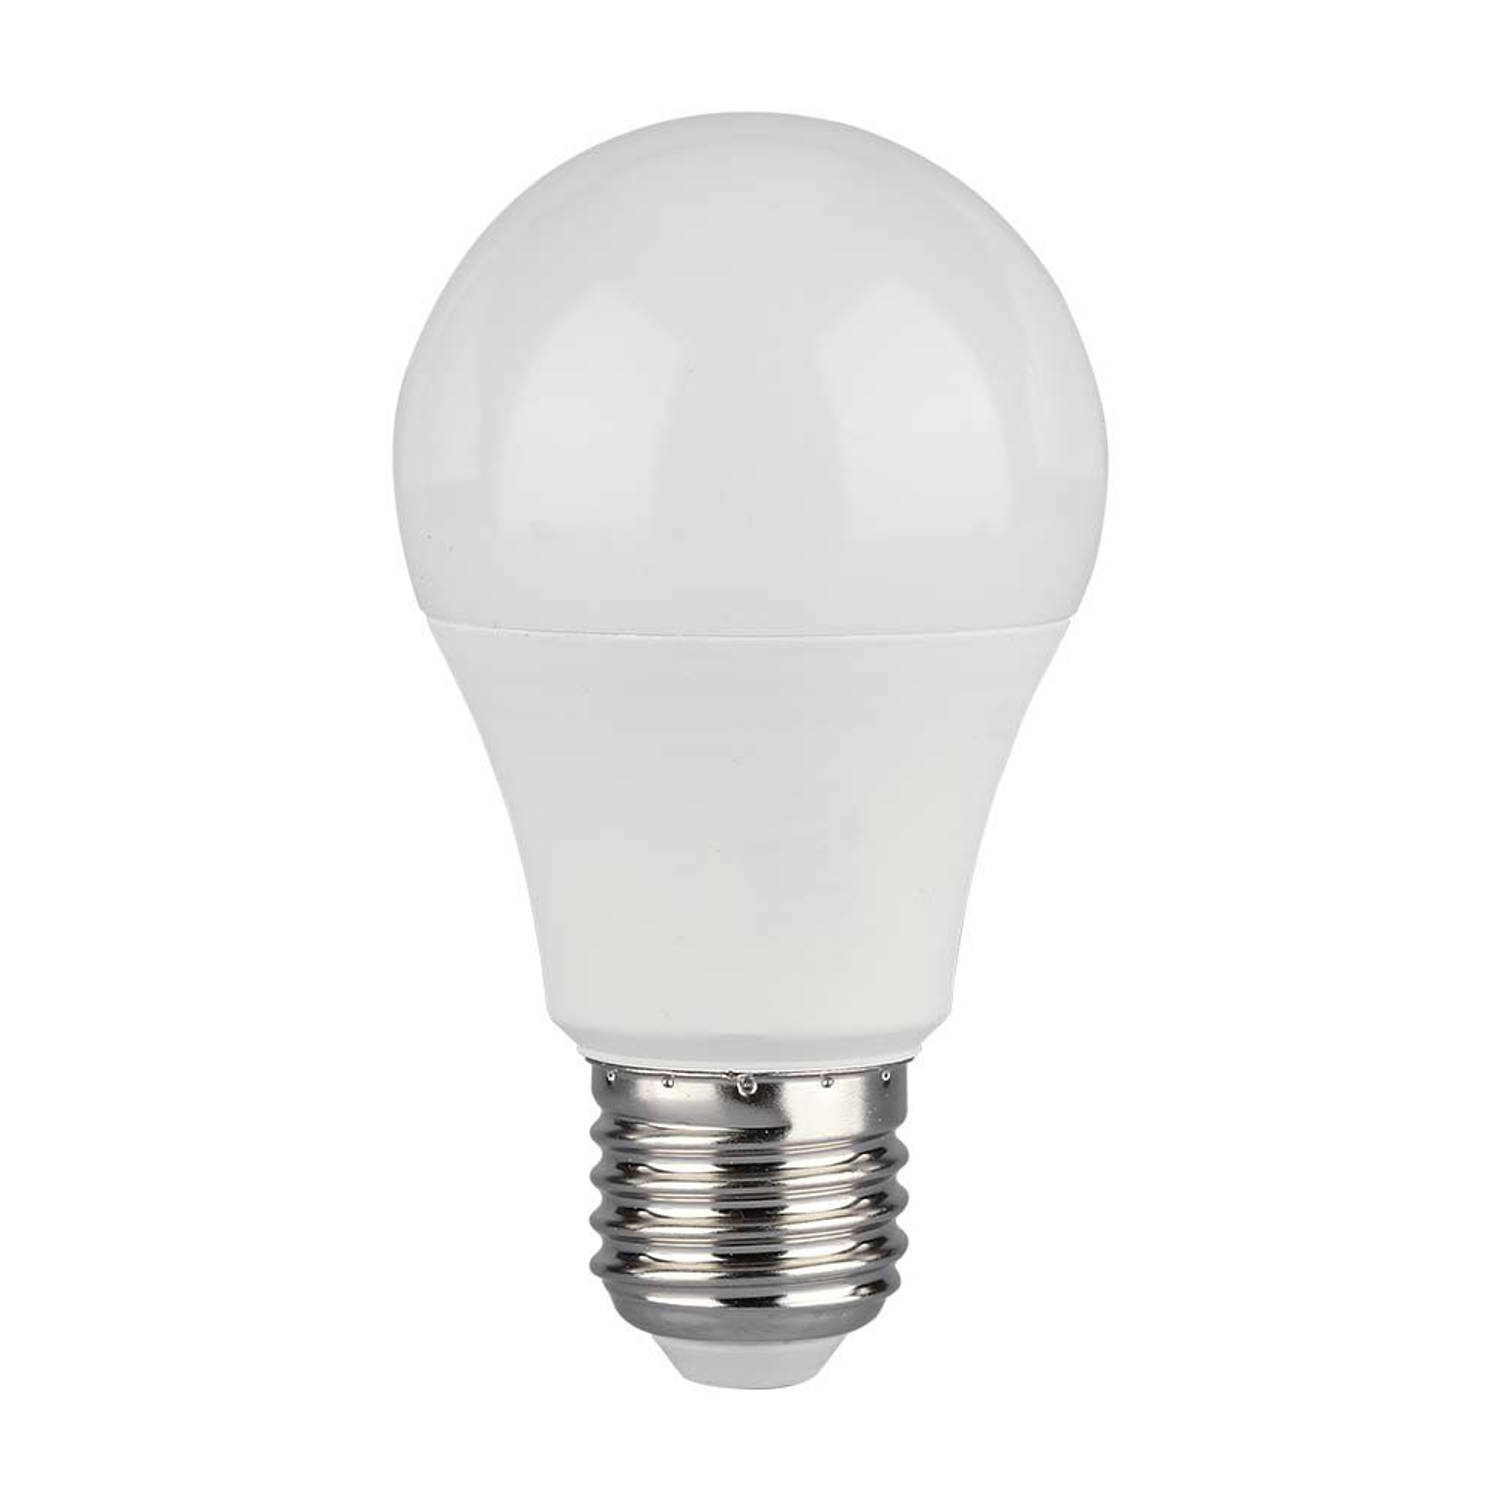 V-TAC VT-2112-N E27 Witte LED Lamp - GLS - IP20 - 10.5W - 1055 Lumen - 4000K